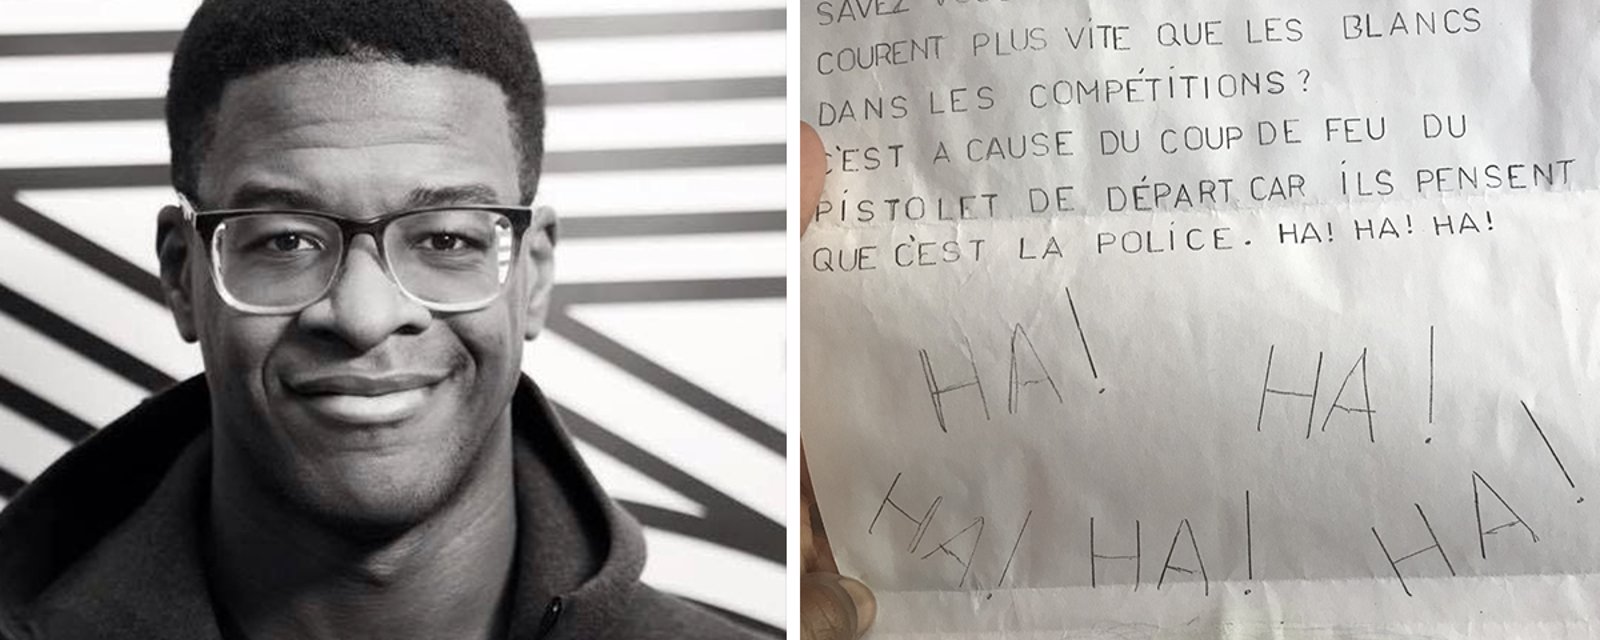 Fabrice Vil a reçu un message raciste à son bureau et sa réaction fait le tour du Web